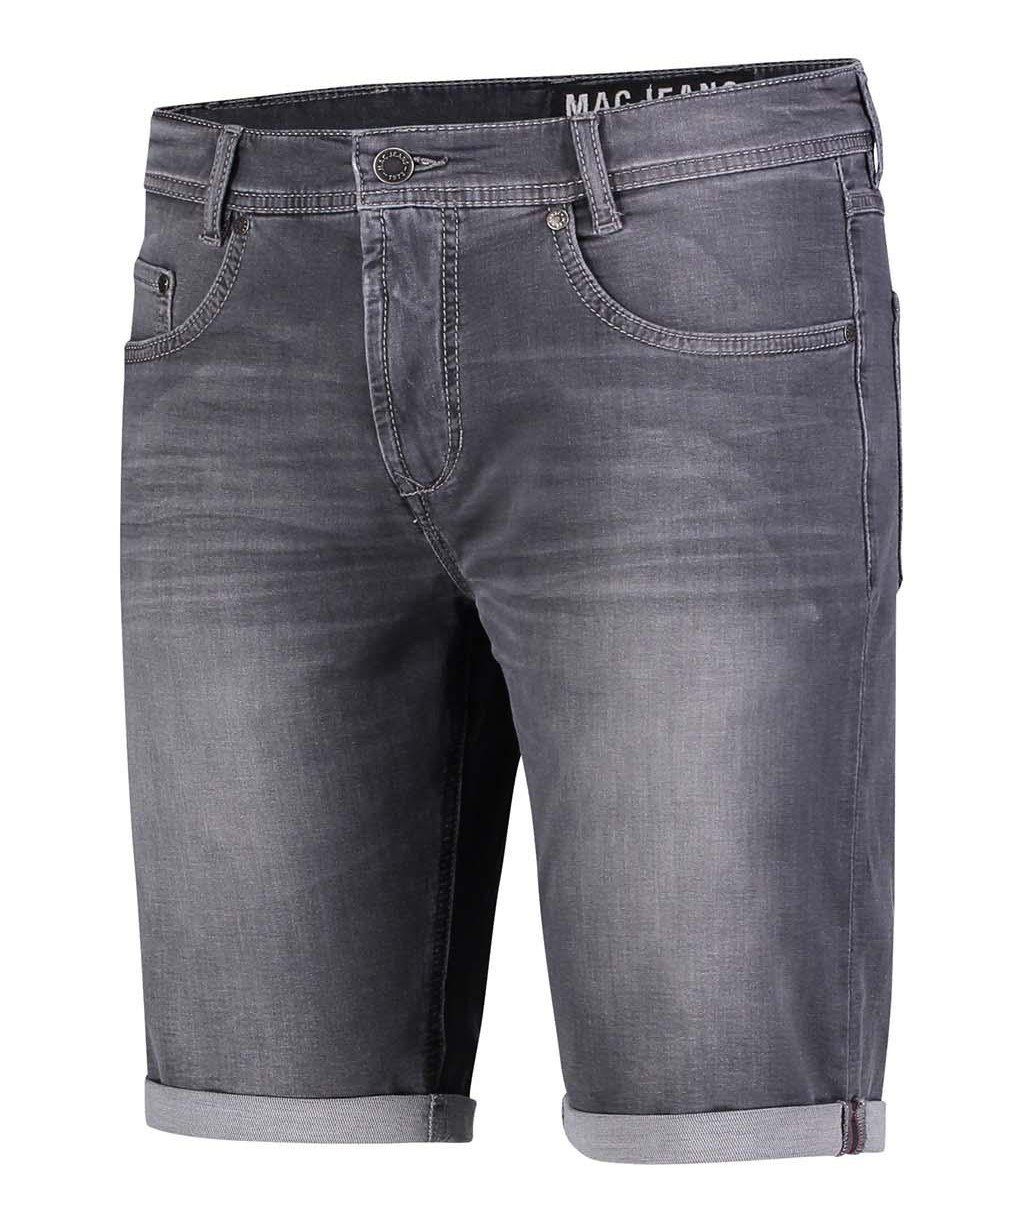 JOG'N 0562-00-0994L-H872 Men BERMUDA ashgrey 5-Pocket-Jeans MAC MAC MAC used Trousers